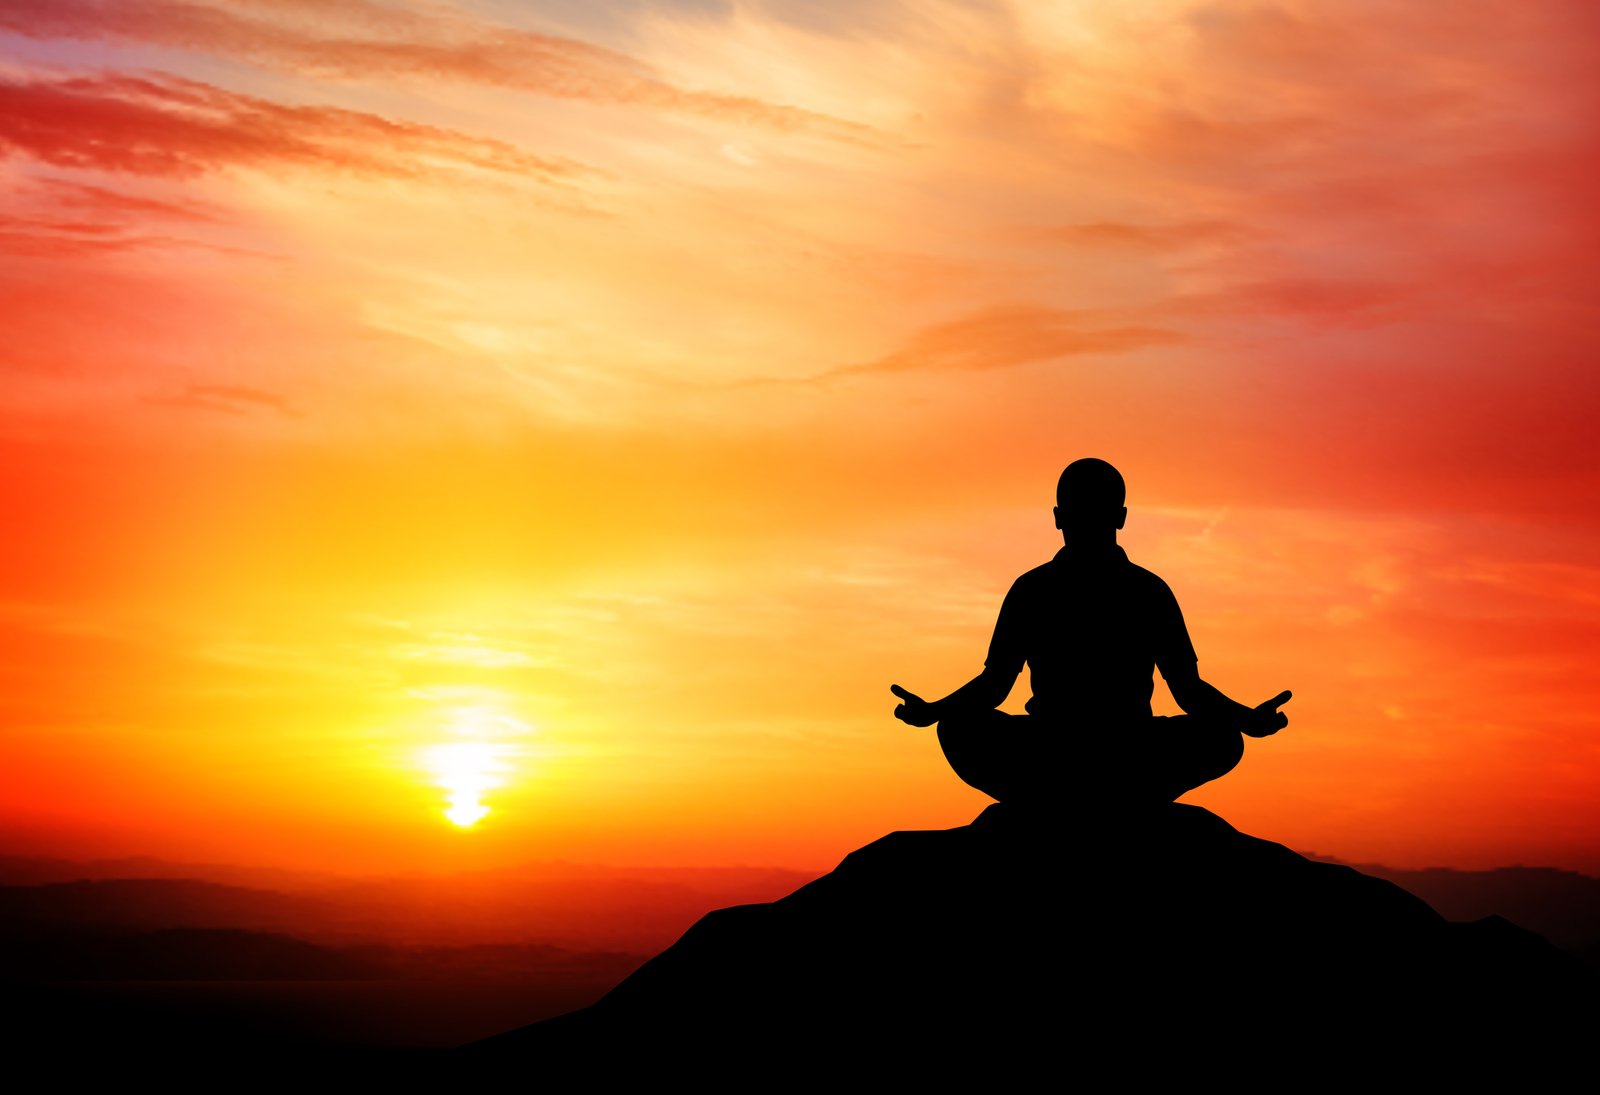 Что значит медитация